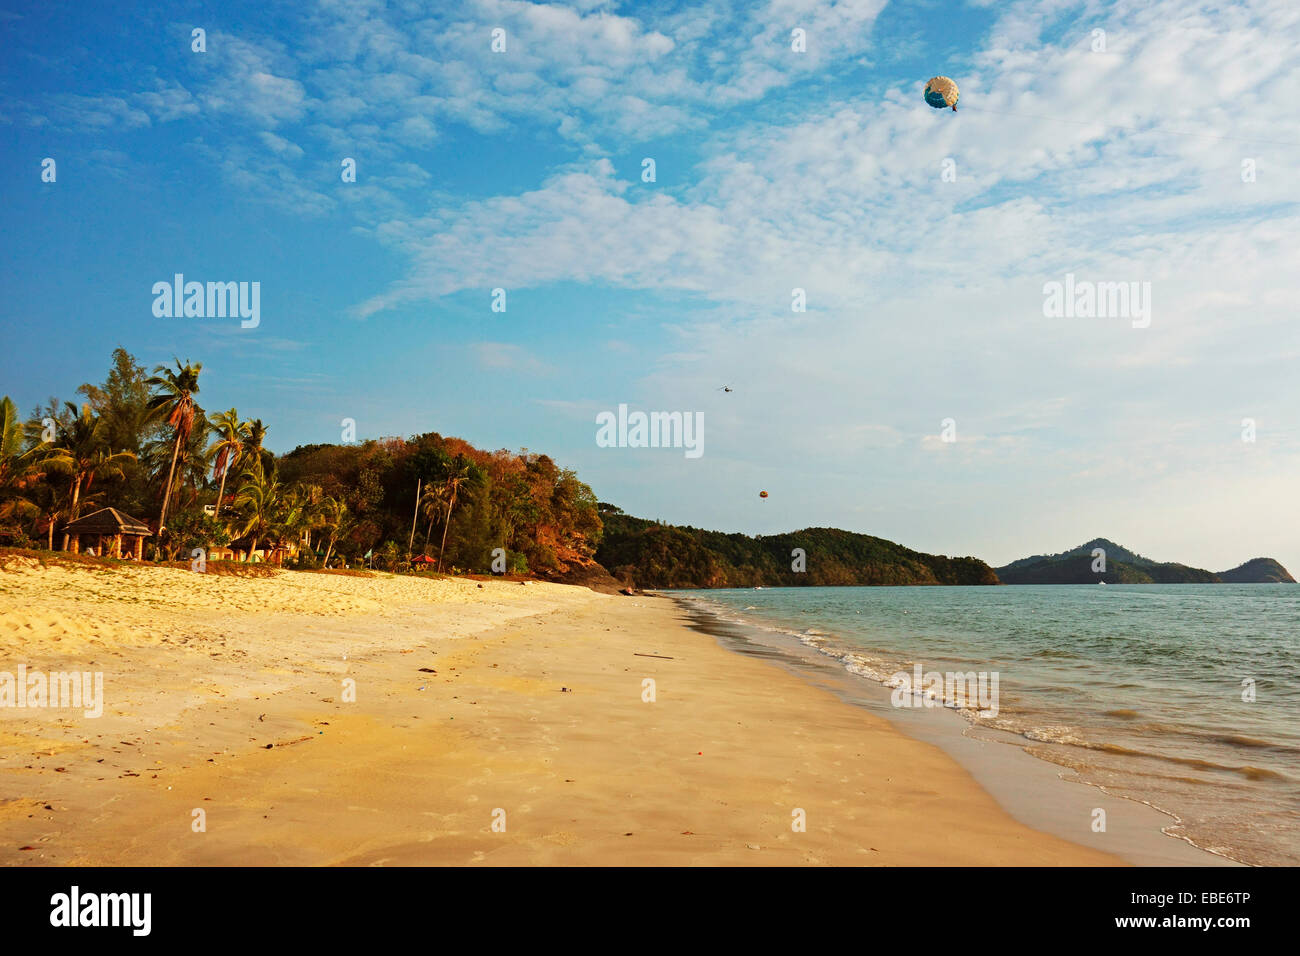 Pantai Cenang, Pulau Langkawi, l'île de Langkawi, Malaisie Archipel Banque D'Images